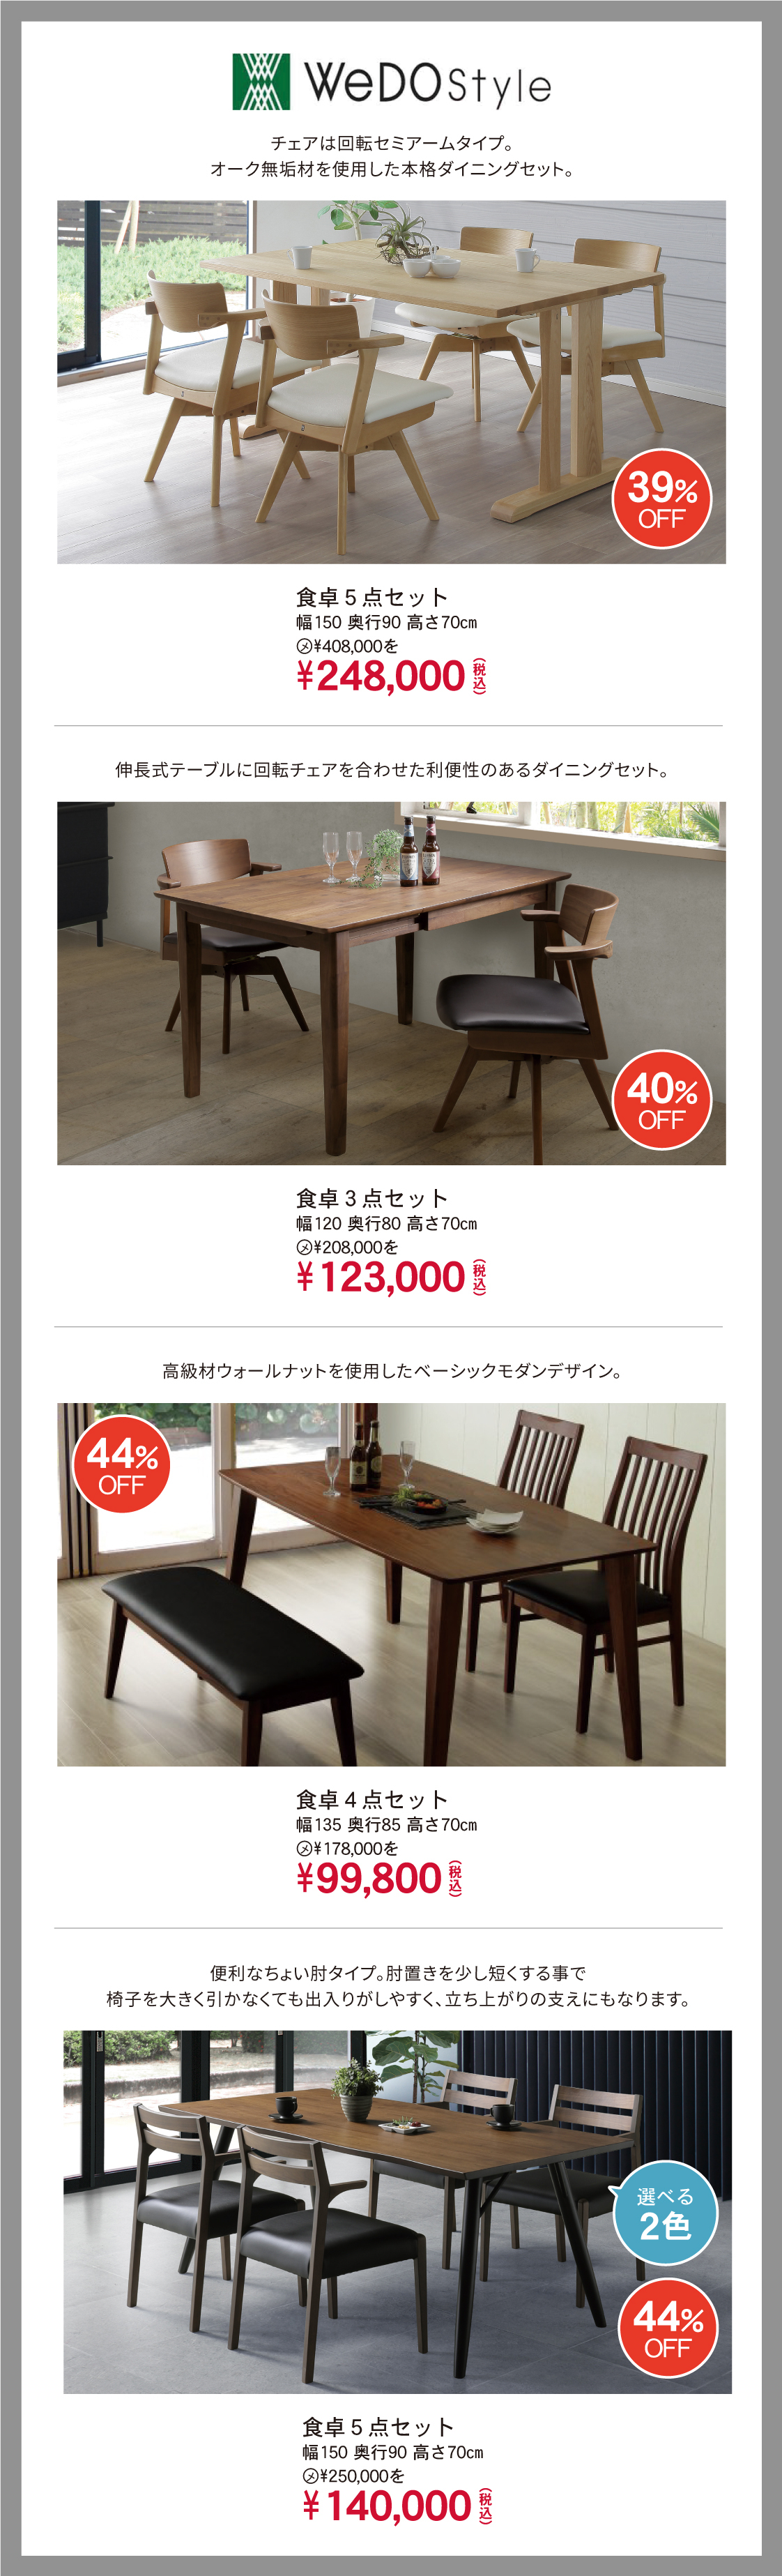 小田億で購入したテーブルと椅子セット - テーブル